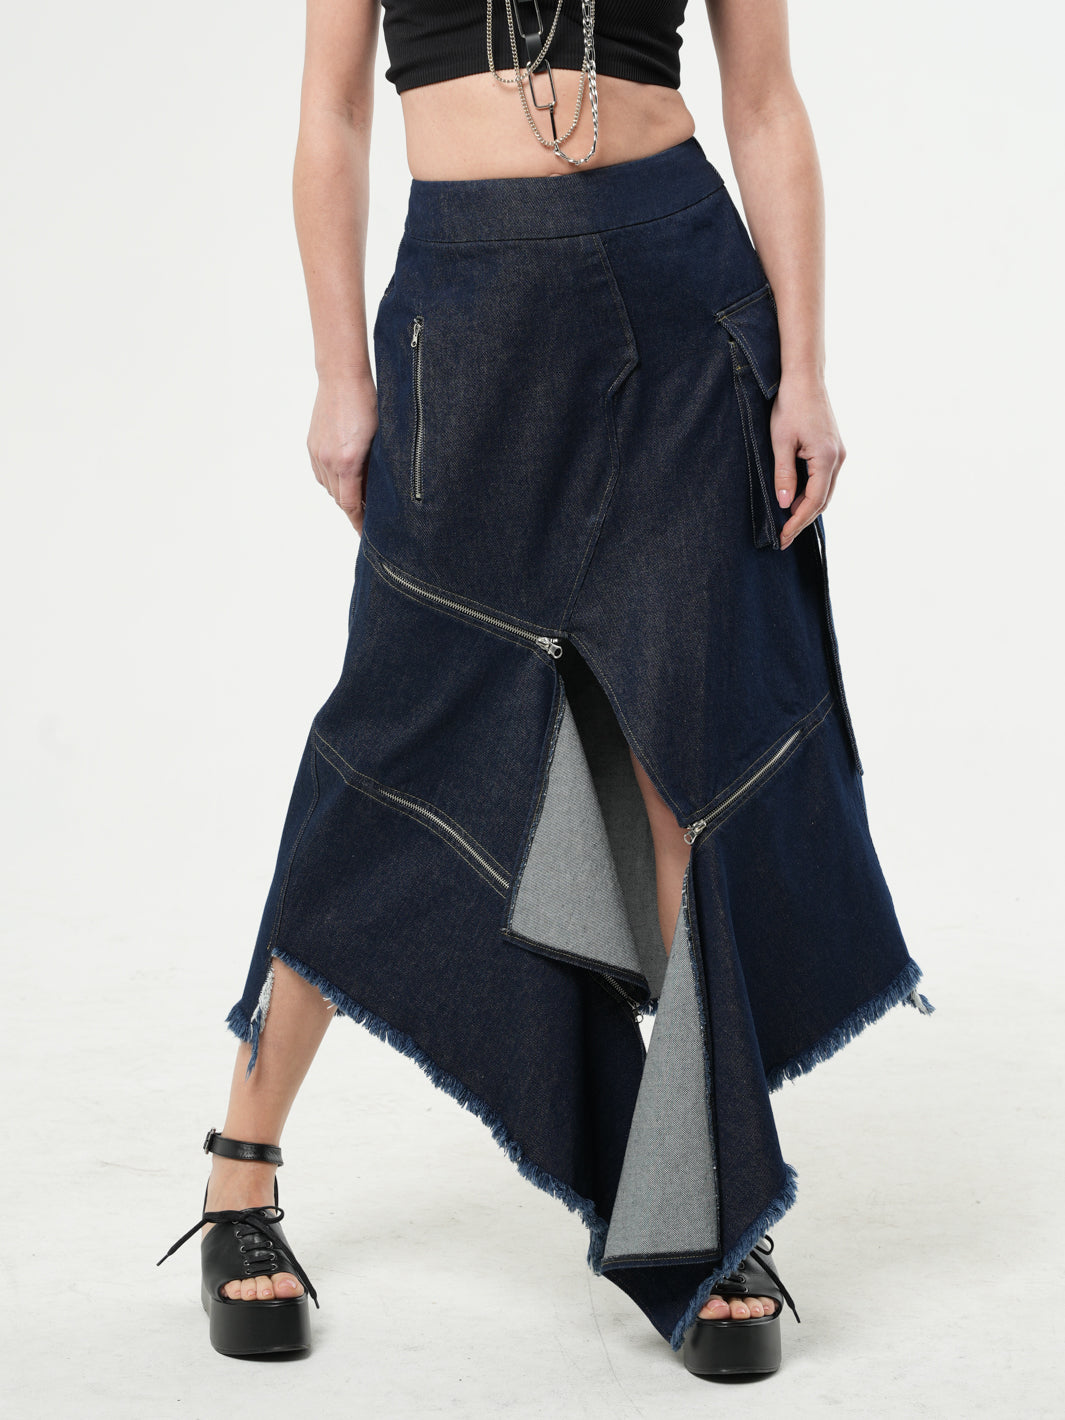 Asymmetric Denim Long Skirt with Zippers